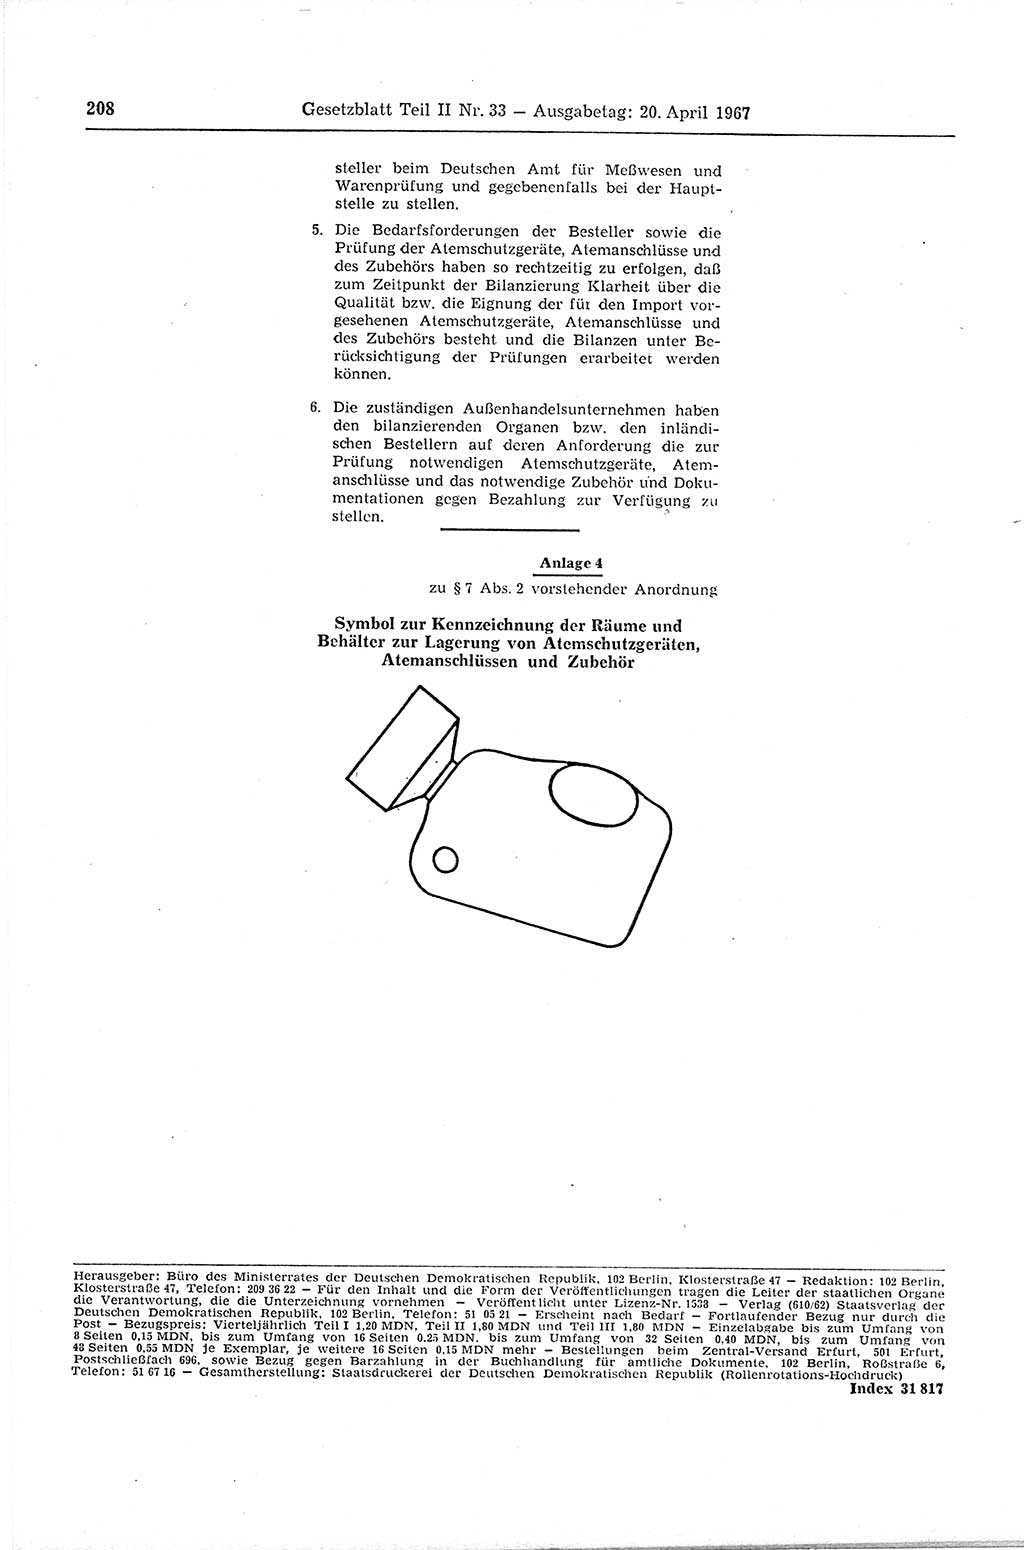 Gesetzblatt (GBl.) der Deutschen Demokratischen Republik (DDR) Teil ⅠⅠ 1967, Seite 208 (GBl. DDR ⅠⅠ 1967, S. 208)